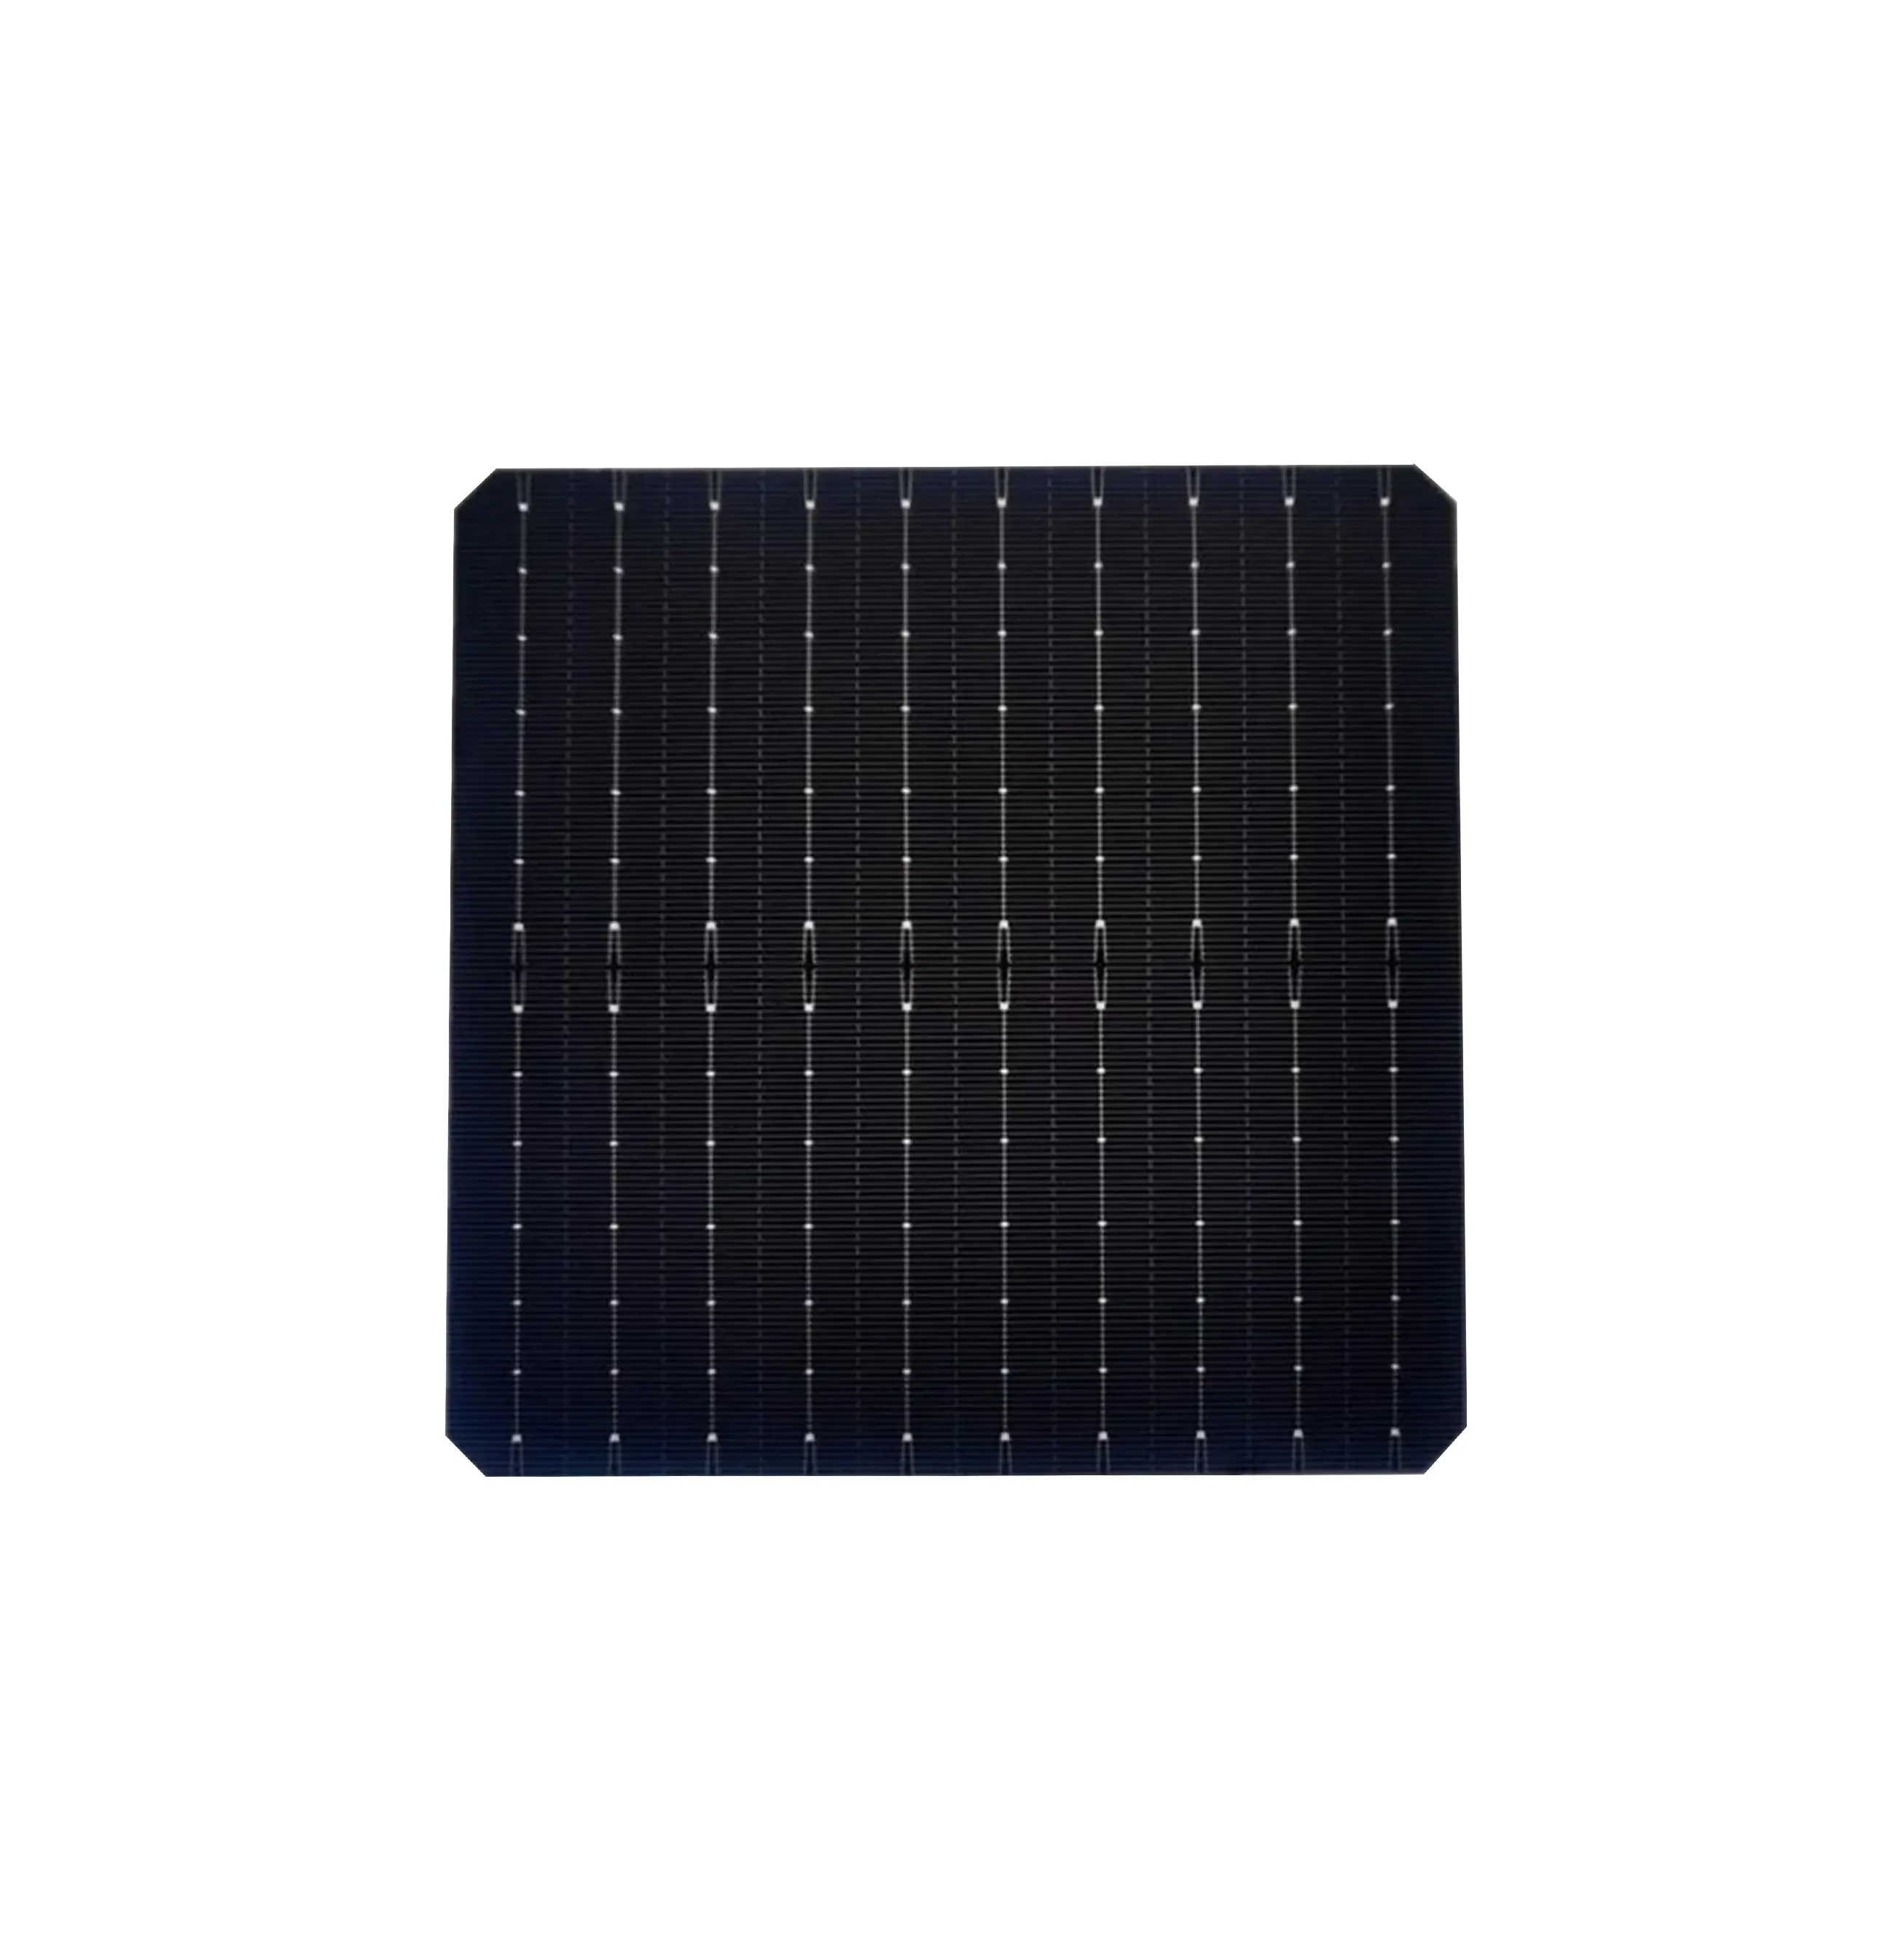 Roof Tiles P-type PERC Bifacial Monofacial Solar Panel Cells